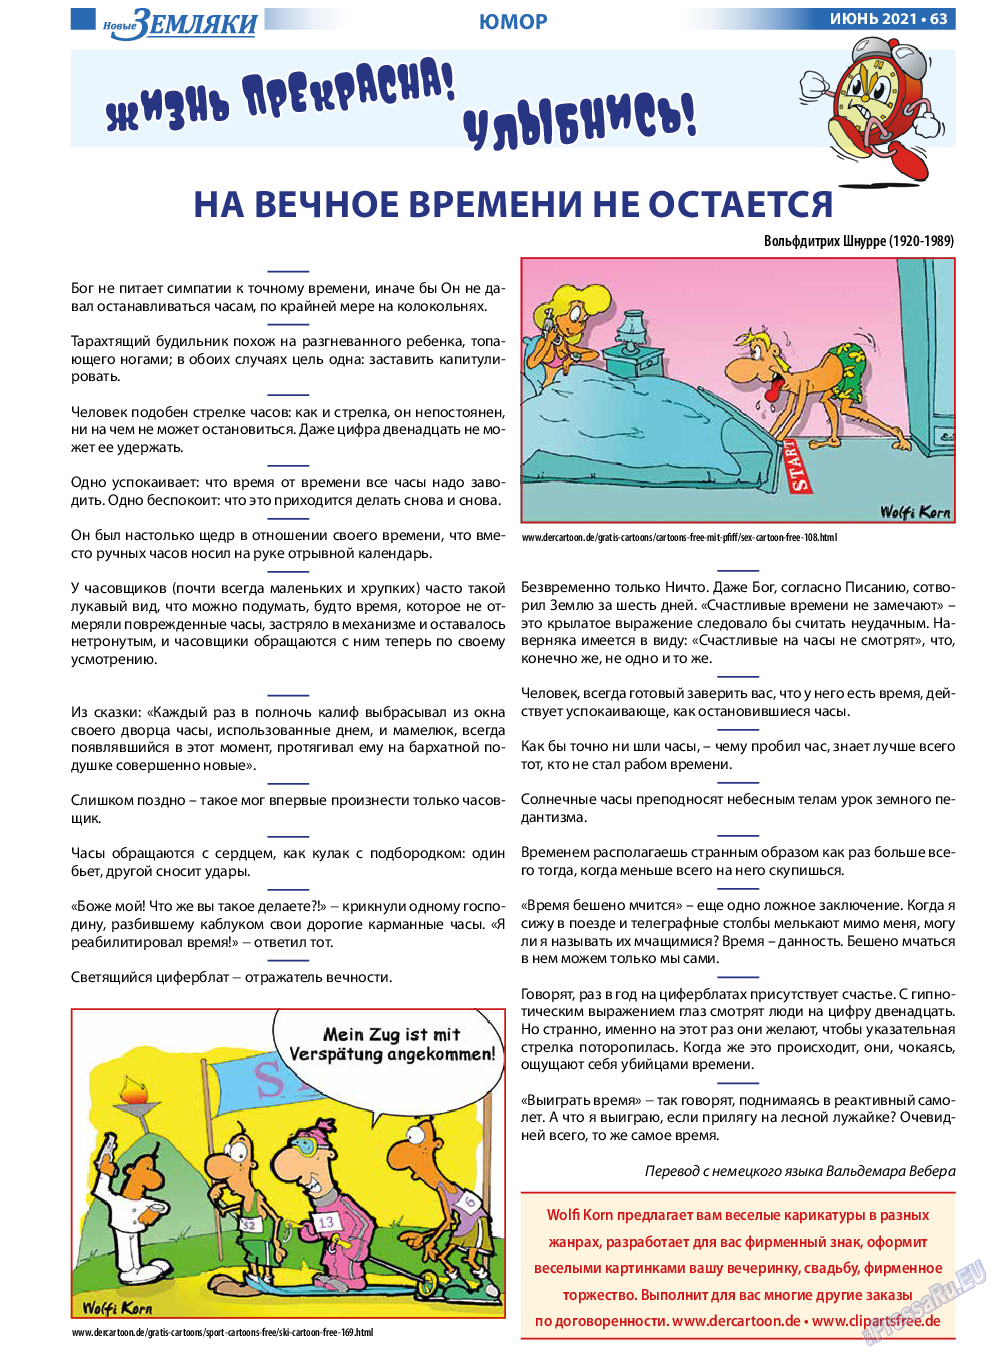 Новые Земляки, газета. 2021 №6 стр.63